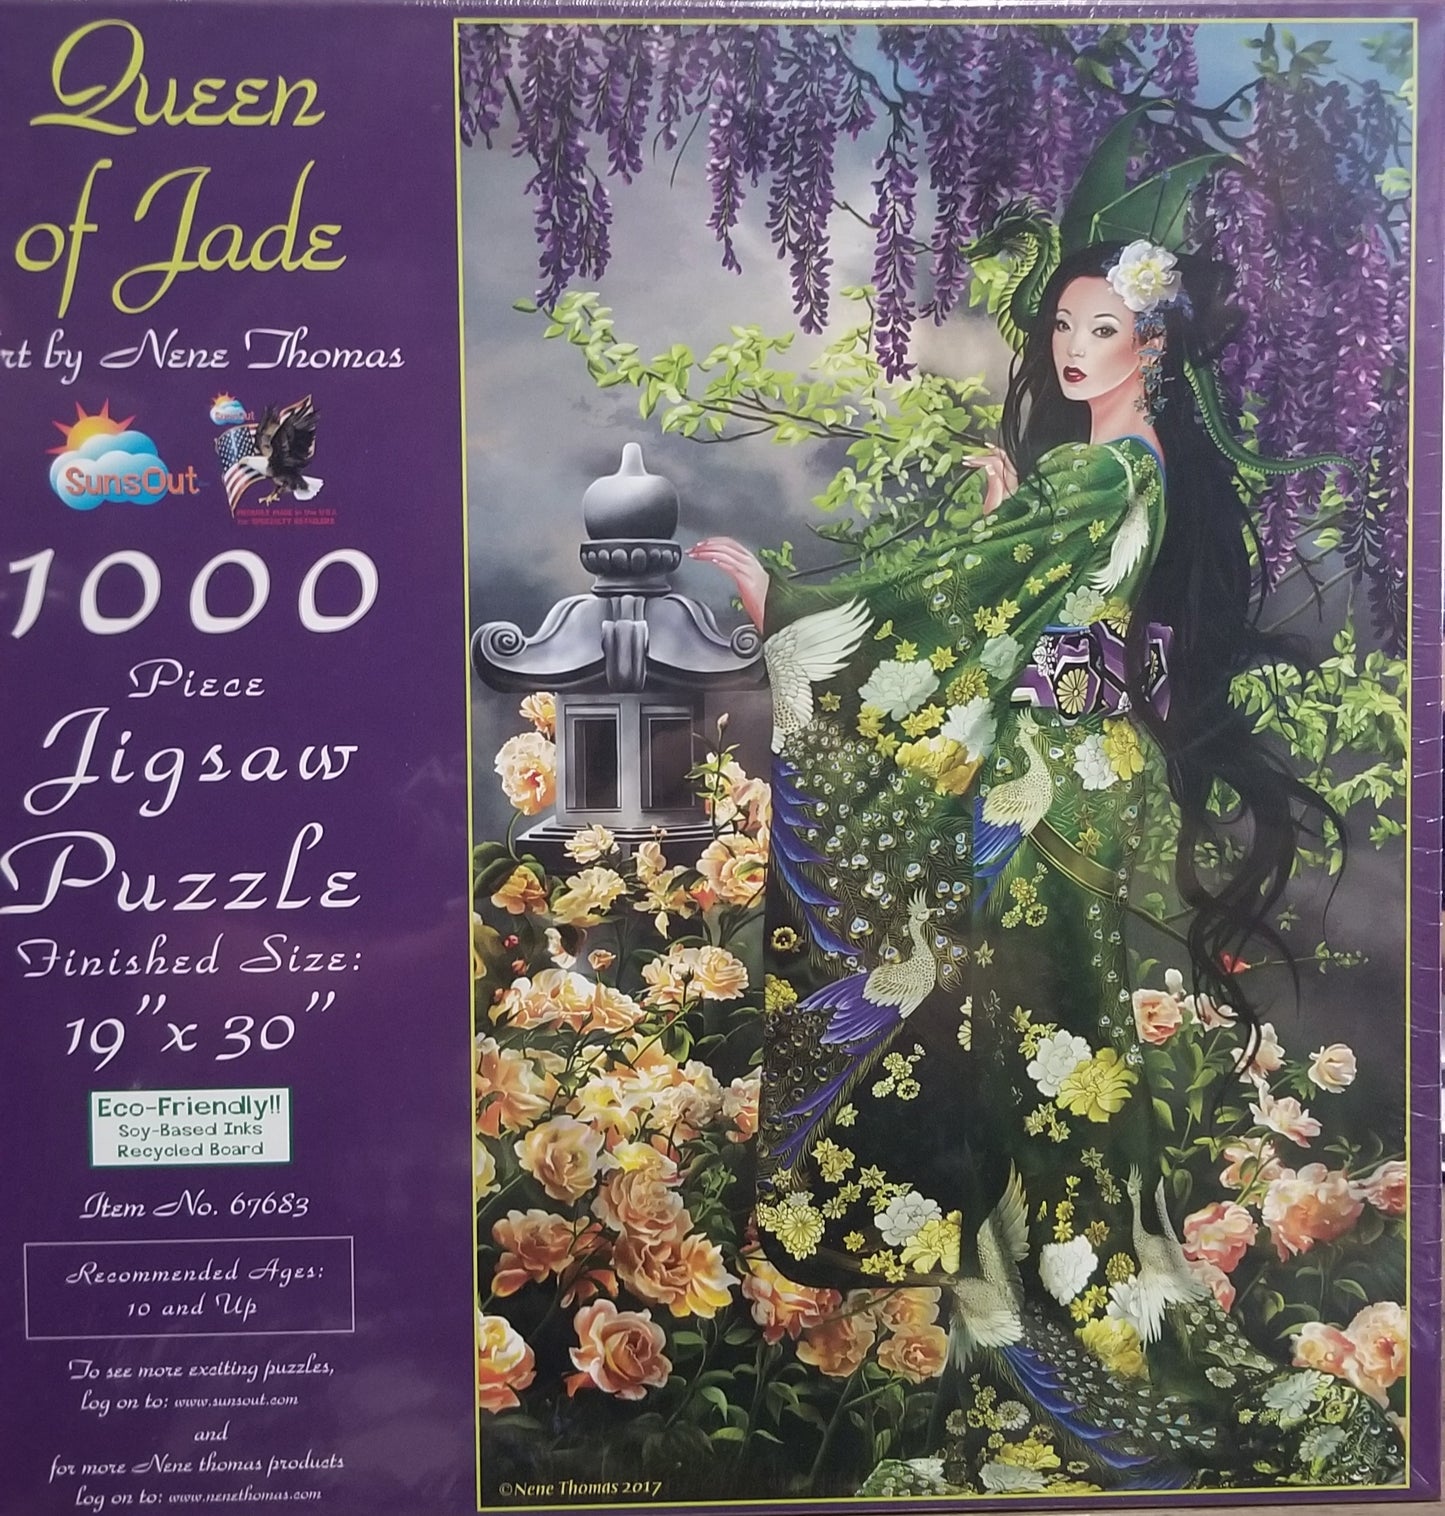 Queen of Jade af Nene Thomas, 1000 brikker puslespil